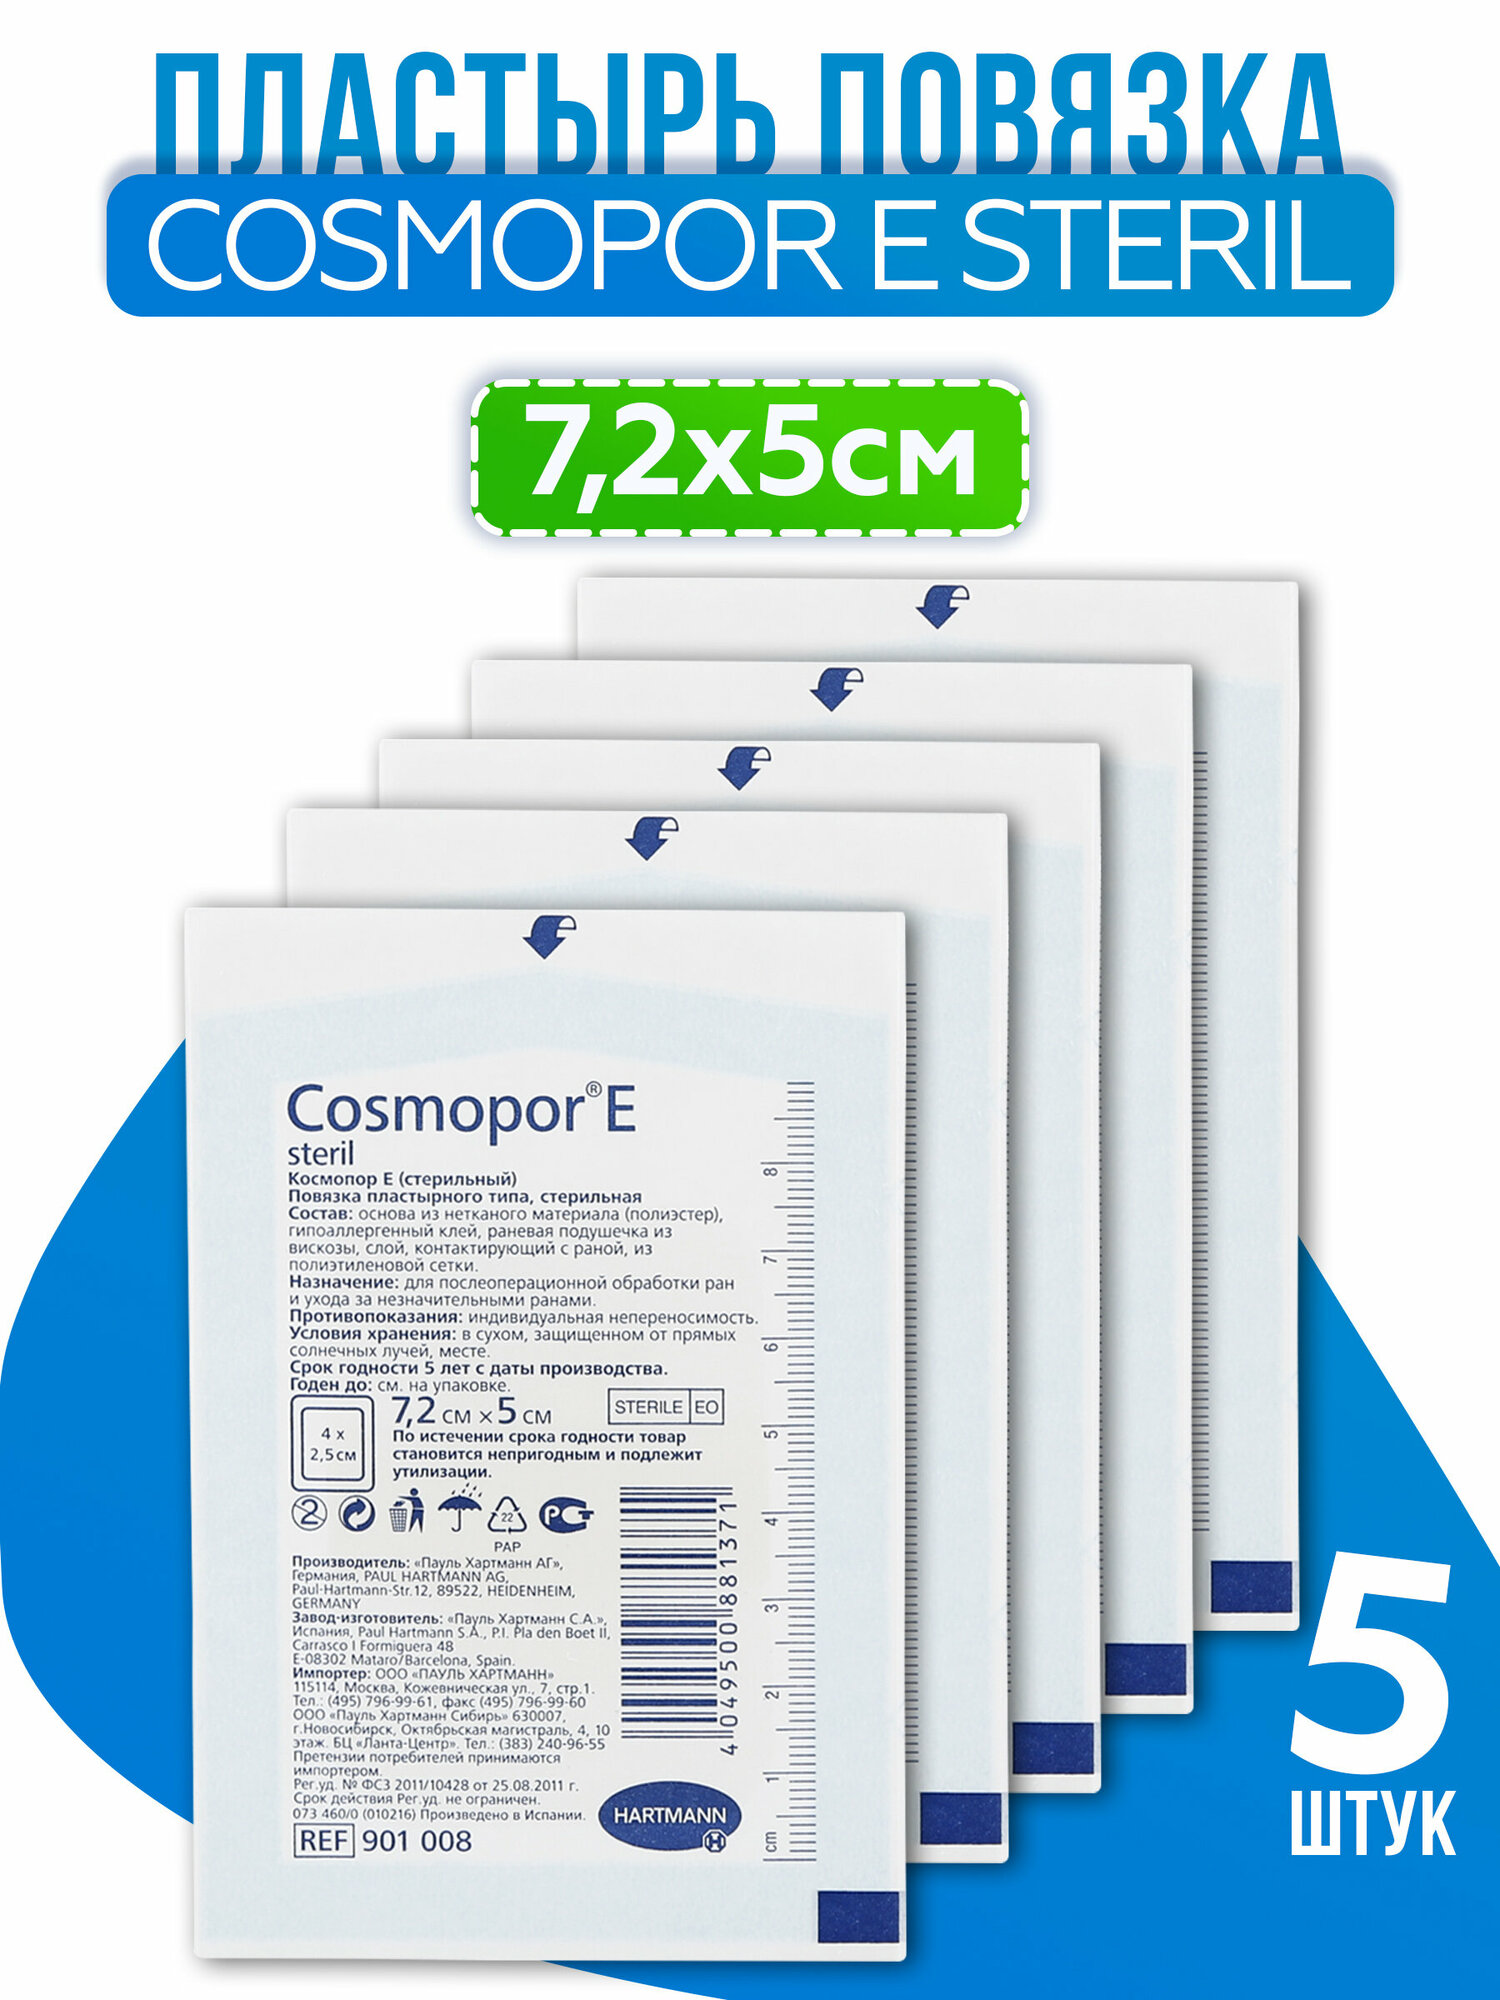 Cosmopor E steril (Космопор E стерил) - пластырные повязки, 7,2 см х 5 см, 5шт.